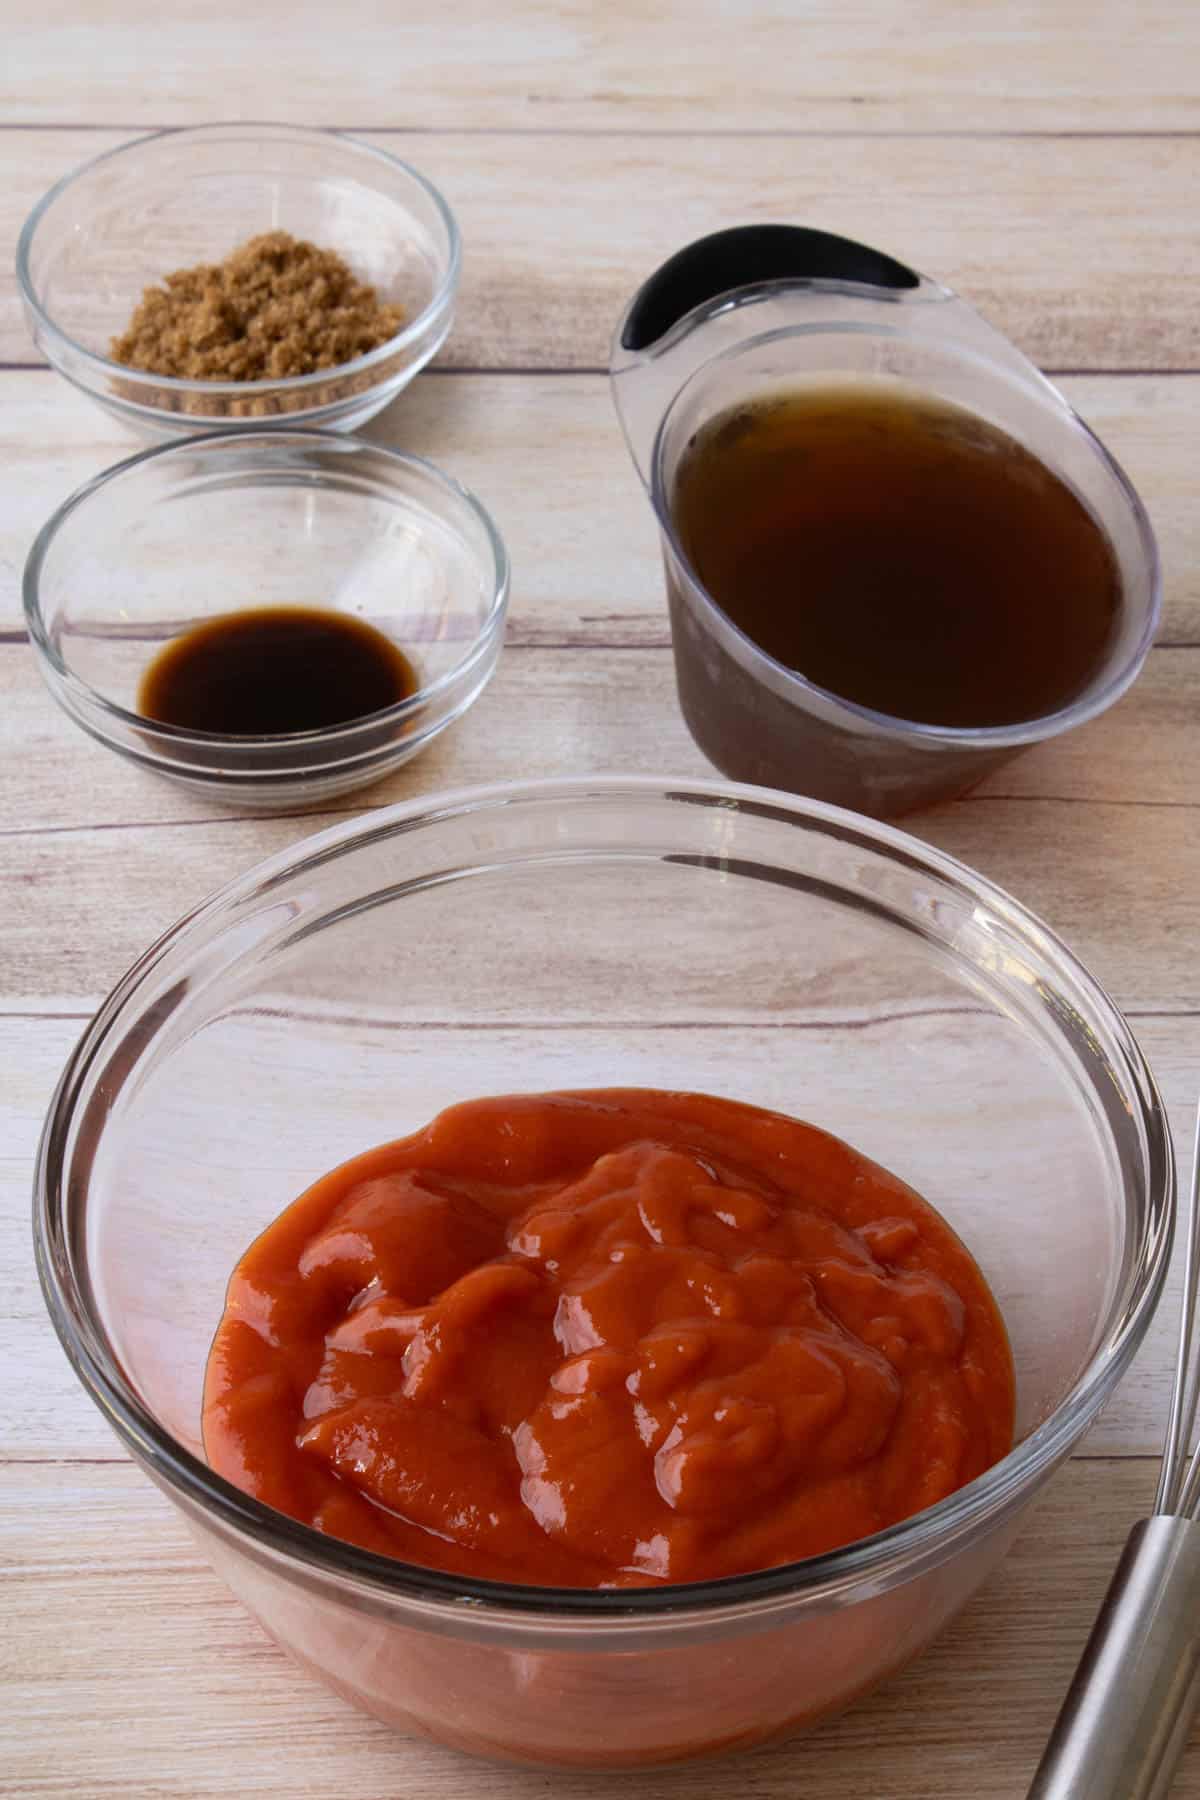 Combining sauce ingredients.